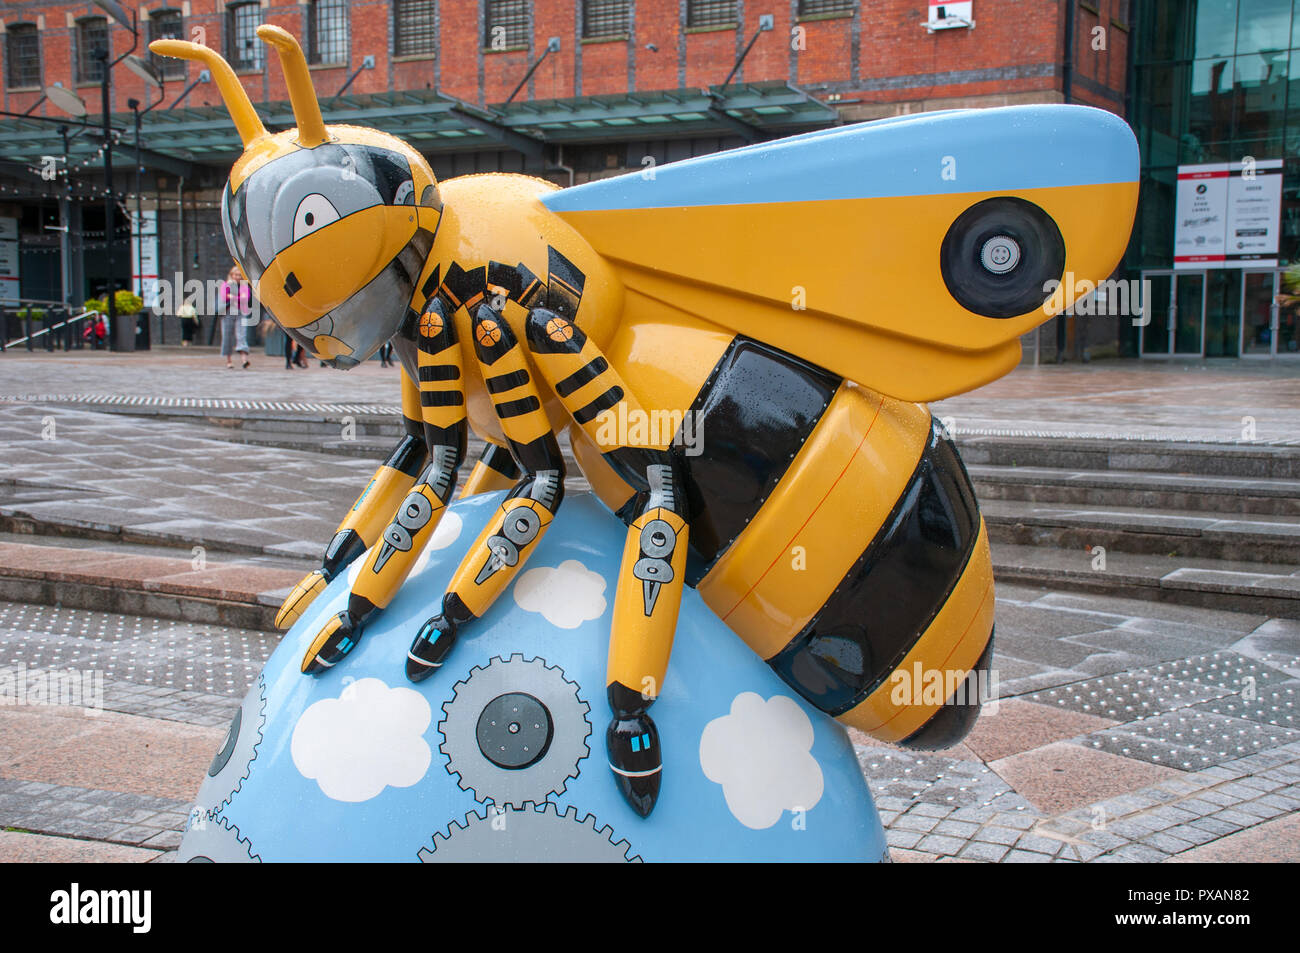 Una ciudad transformada, por Helen Russell creaciones. Una de las esculturas en la ciudad de abeja, Gran Plaza Norte, Manchester, Reino Unido. Foto de stock